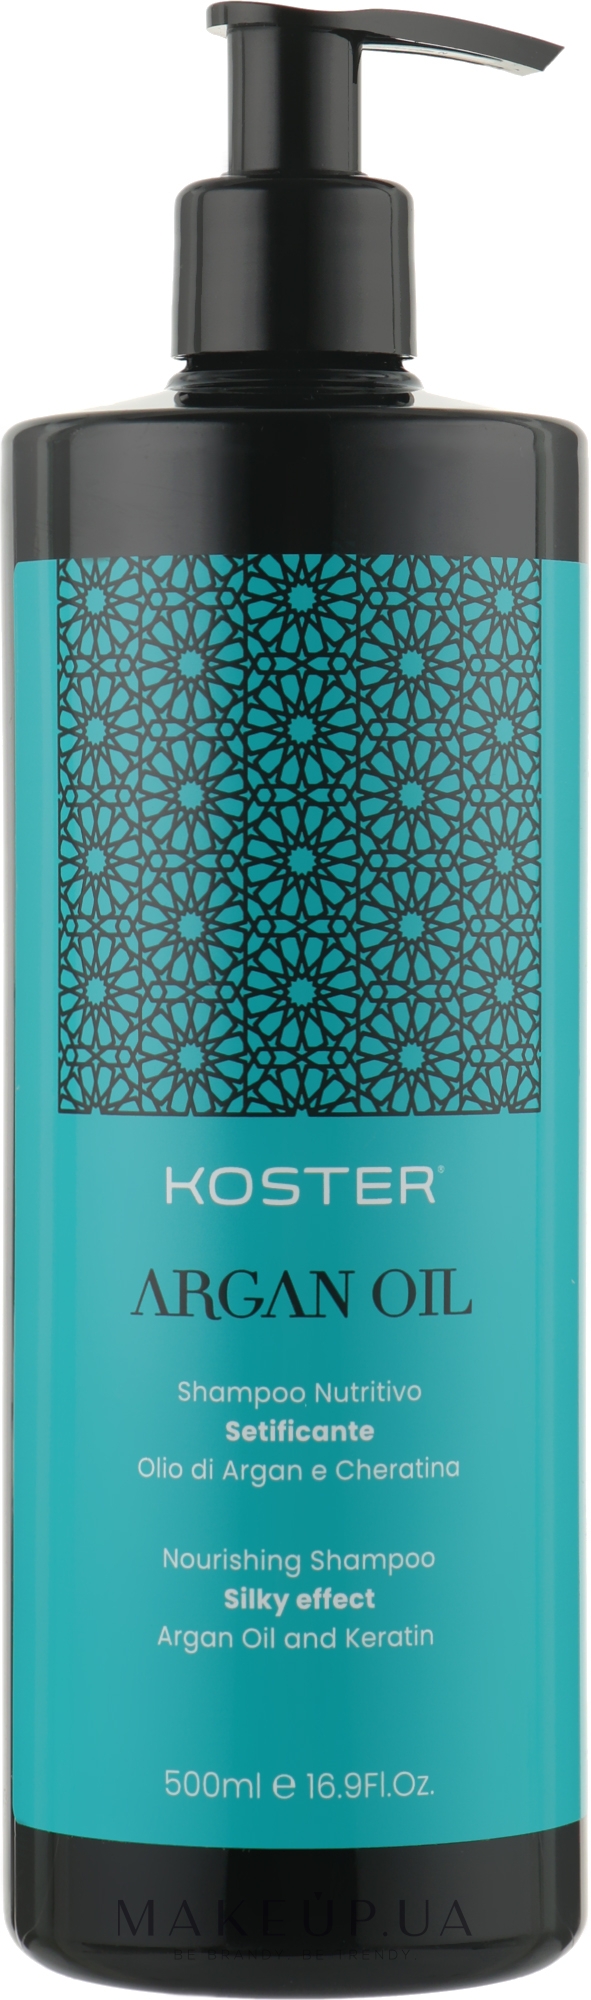 Питательный шампунь для волос - Koster Argan Oil — фото 500ml